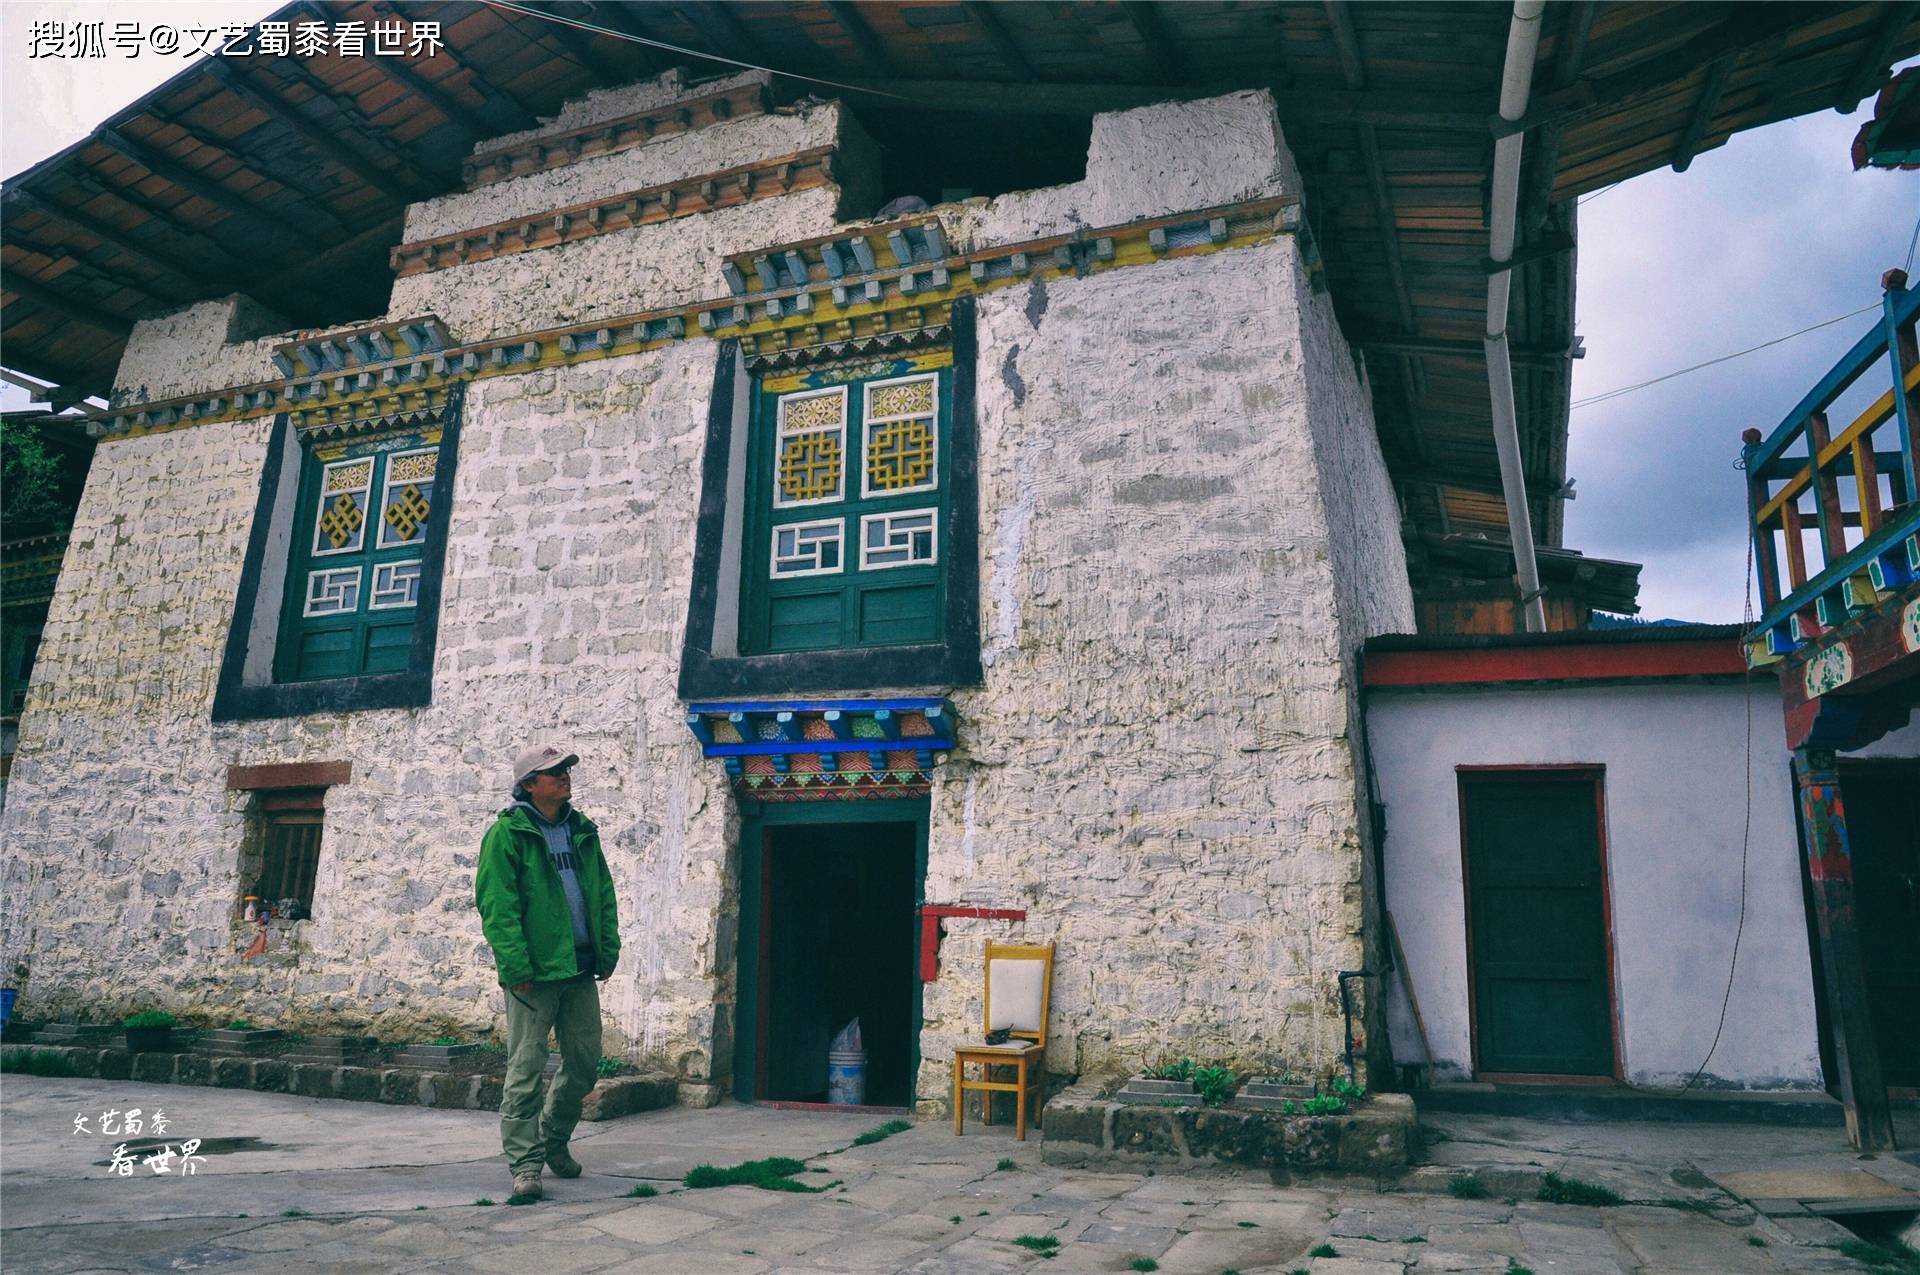 在川藏线上有一个仙境一样的村庄，鲁朗扎西岗村，去过的人并不多